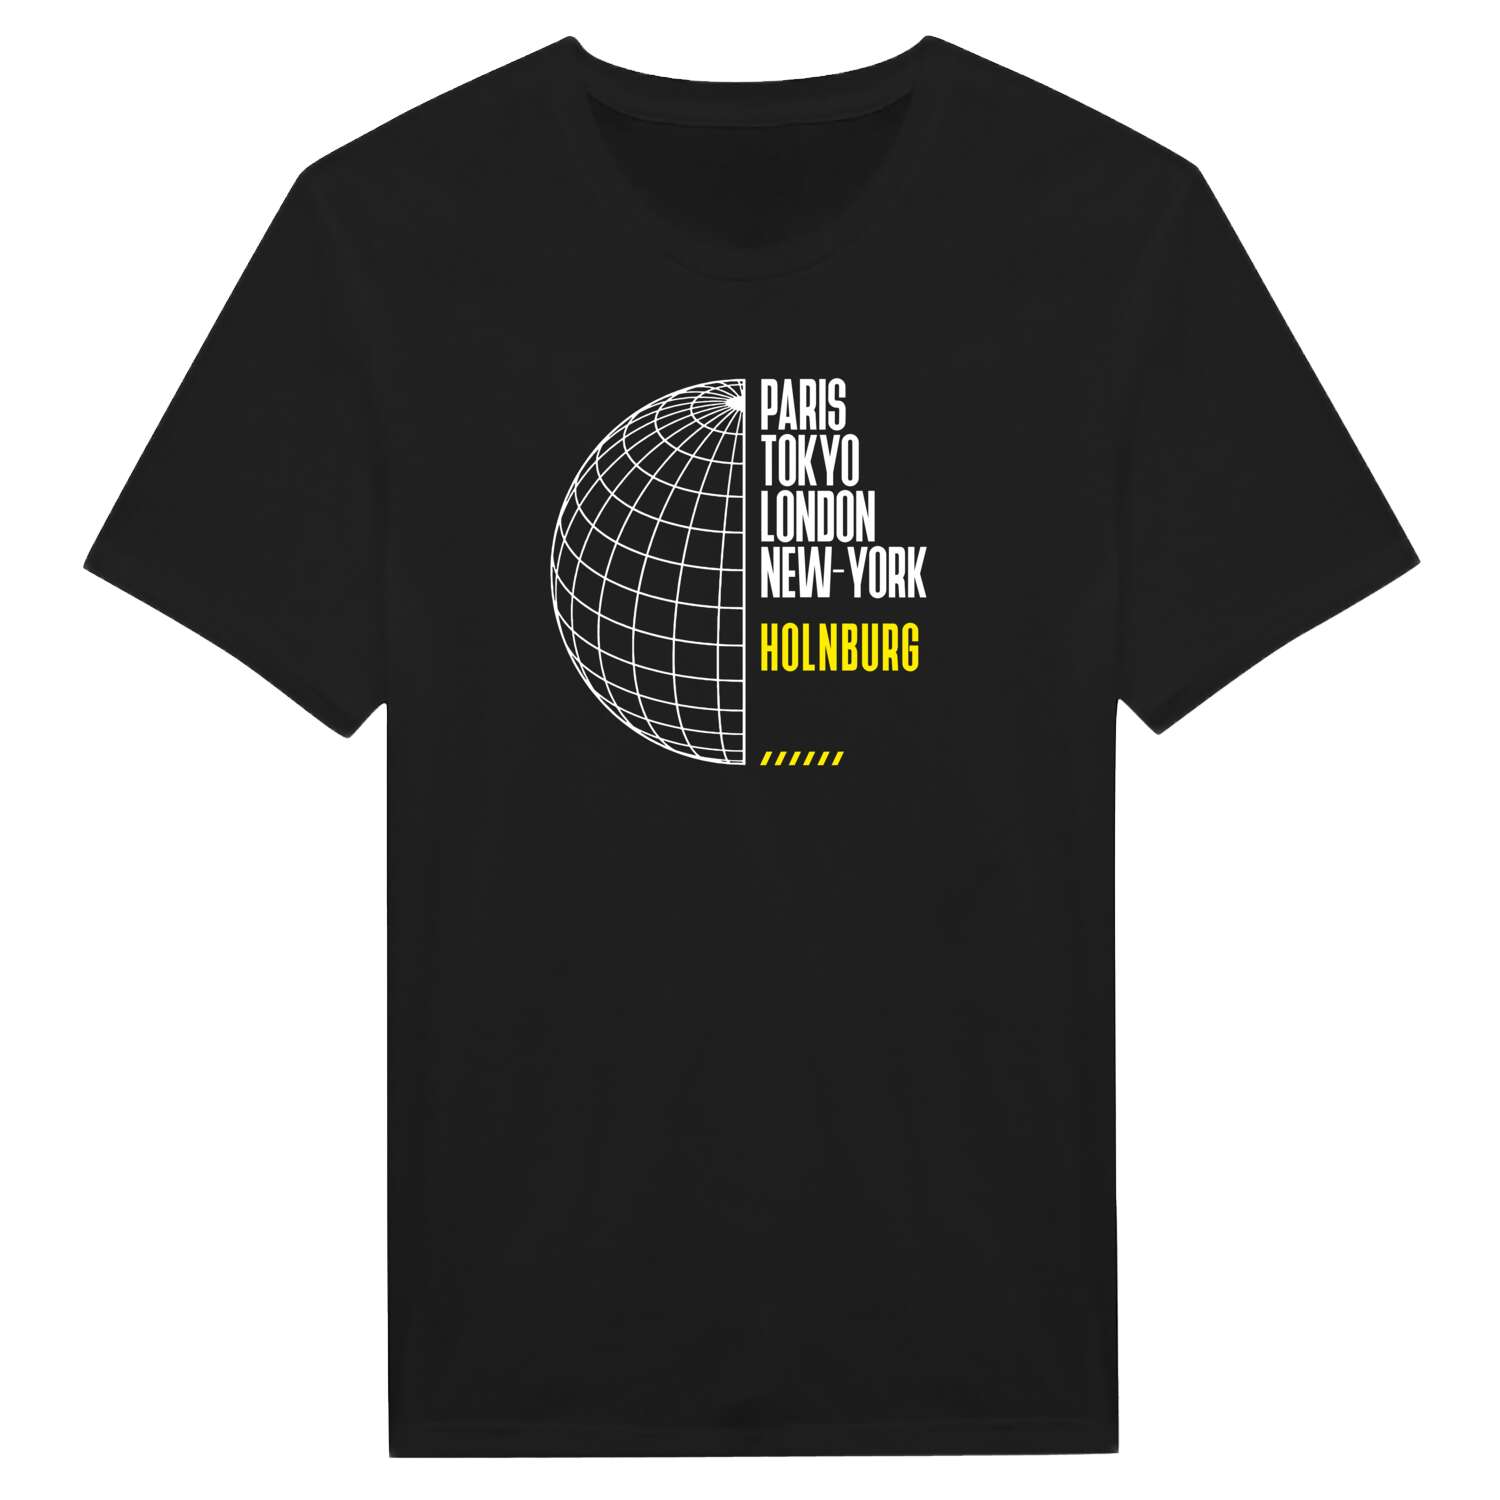 Holnburg T-Shirt »Paris Tokyo London«